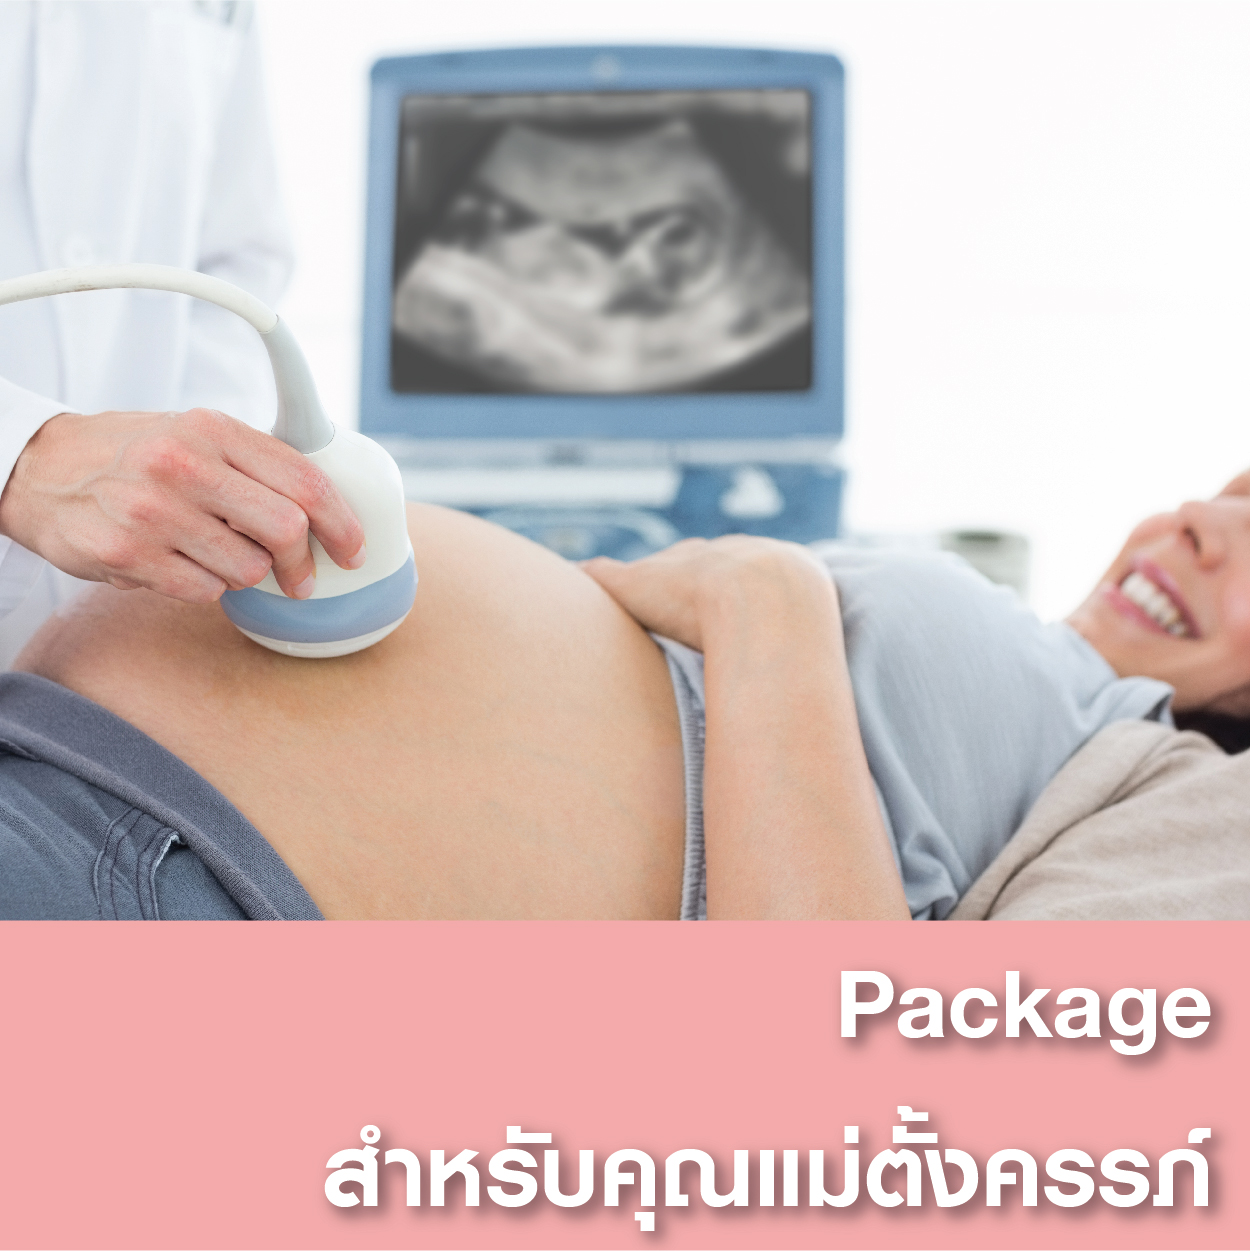 Package สำหรับคุณแม่ตั้งครรภ์ - แพ็คเกจโปรโมชั่น - โรงพยาบาลรวมแพทย์ฉะเชิงเทรา